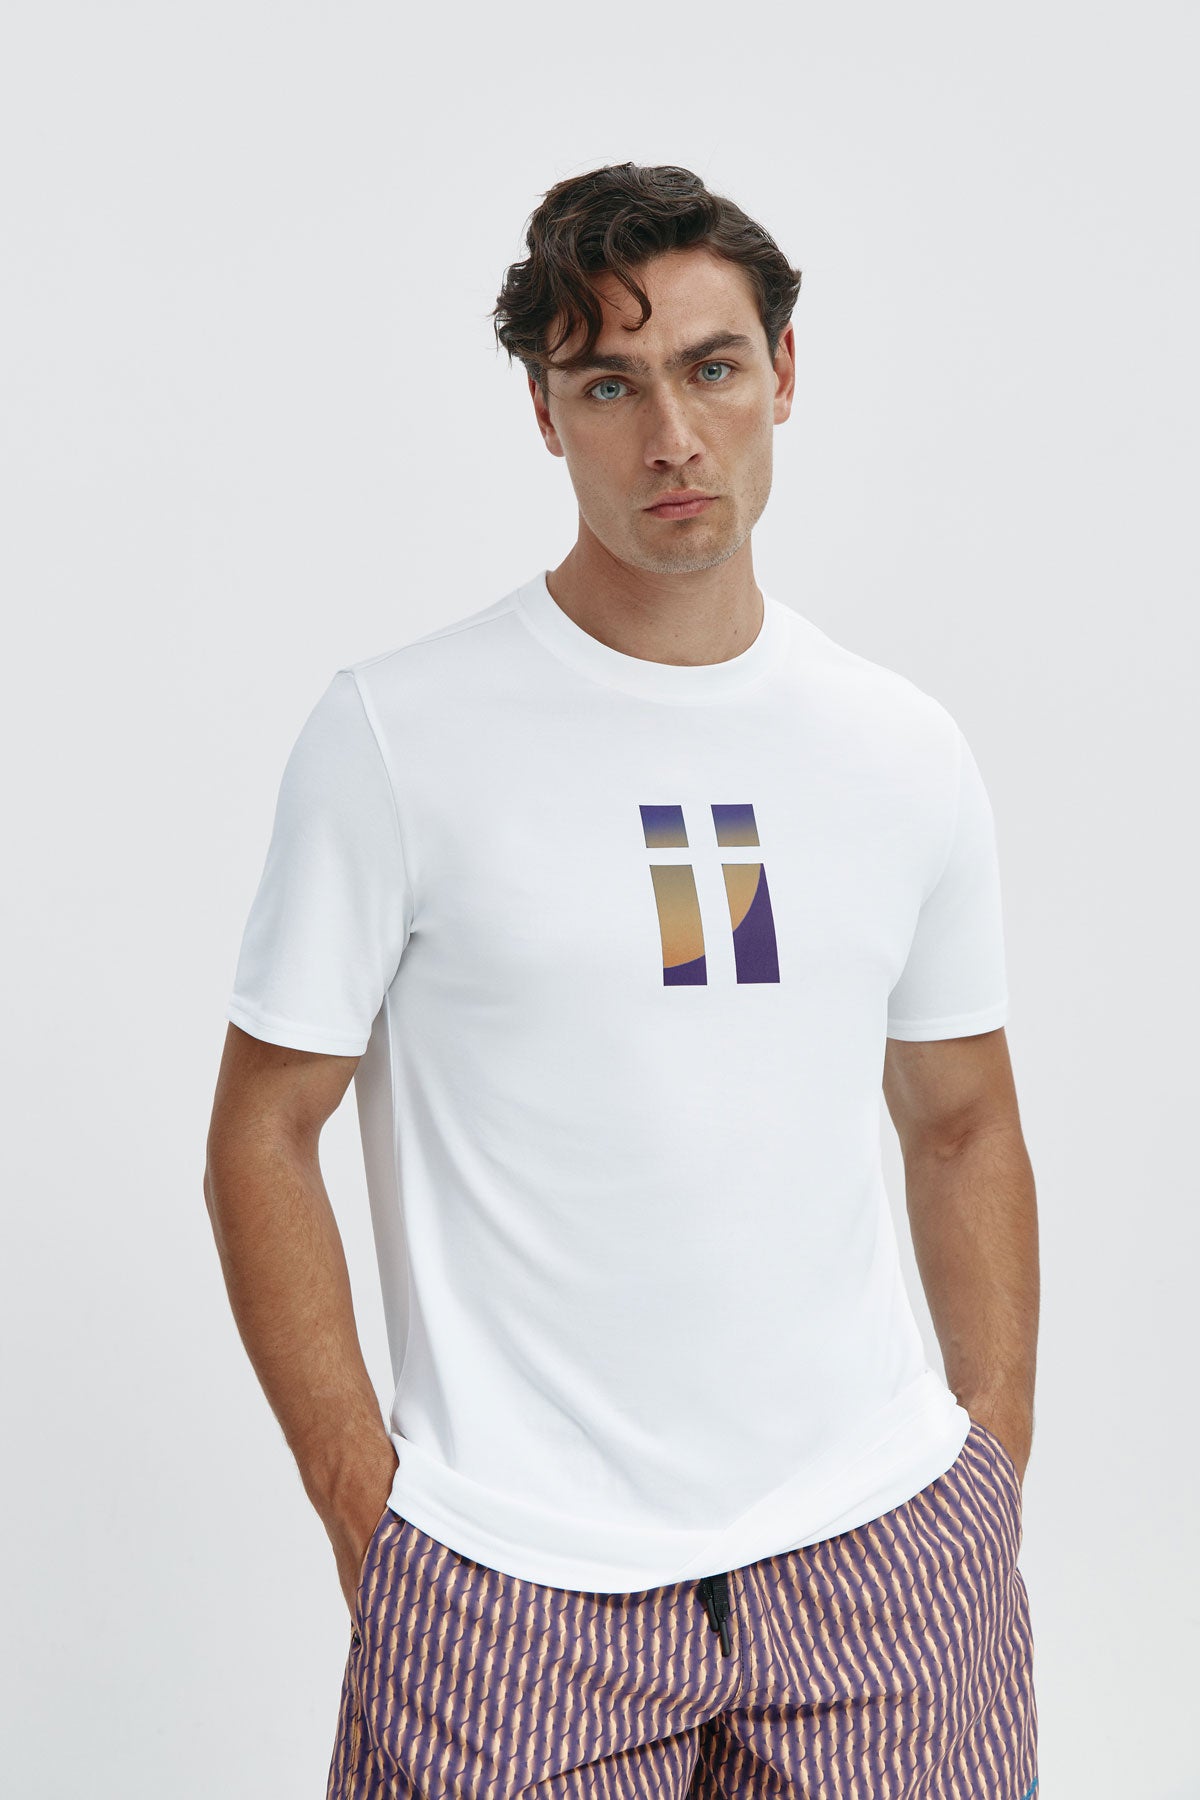 Camiseta básica de hombre blanca con logo estampado de espiral de manga corta, antiarrugas y antimanchas. Foto frente